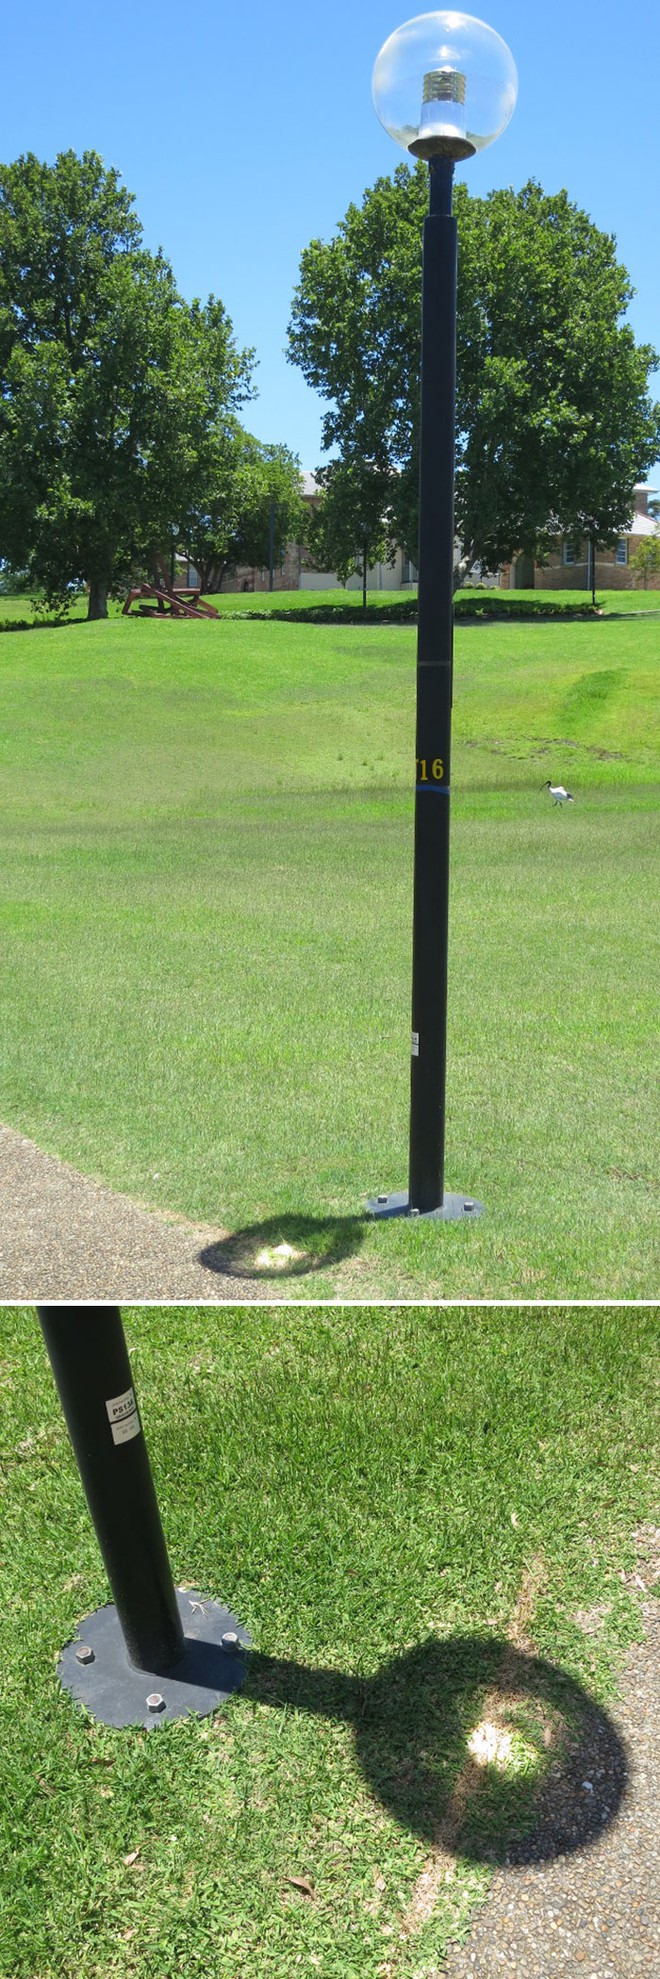  Chao đèn vô tinh biến thành một thấu kính, hội tụ ánh sáng mặt trời và thiêu đốt một vệt dài trên bãi cỏ suốt nhiều năm 